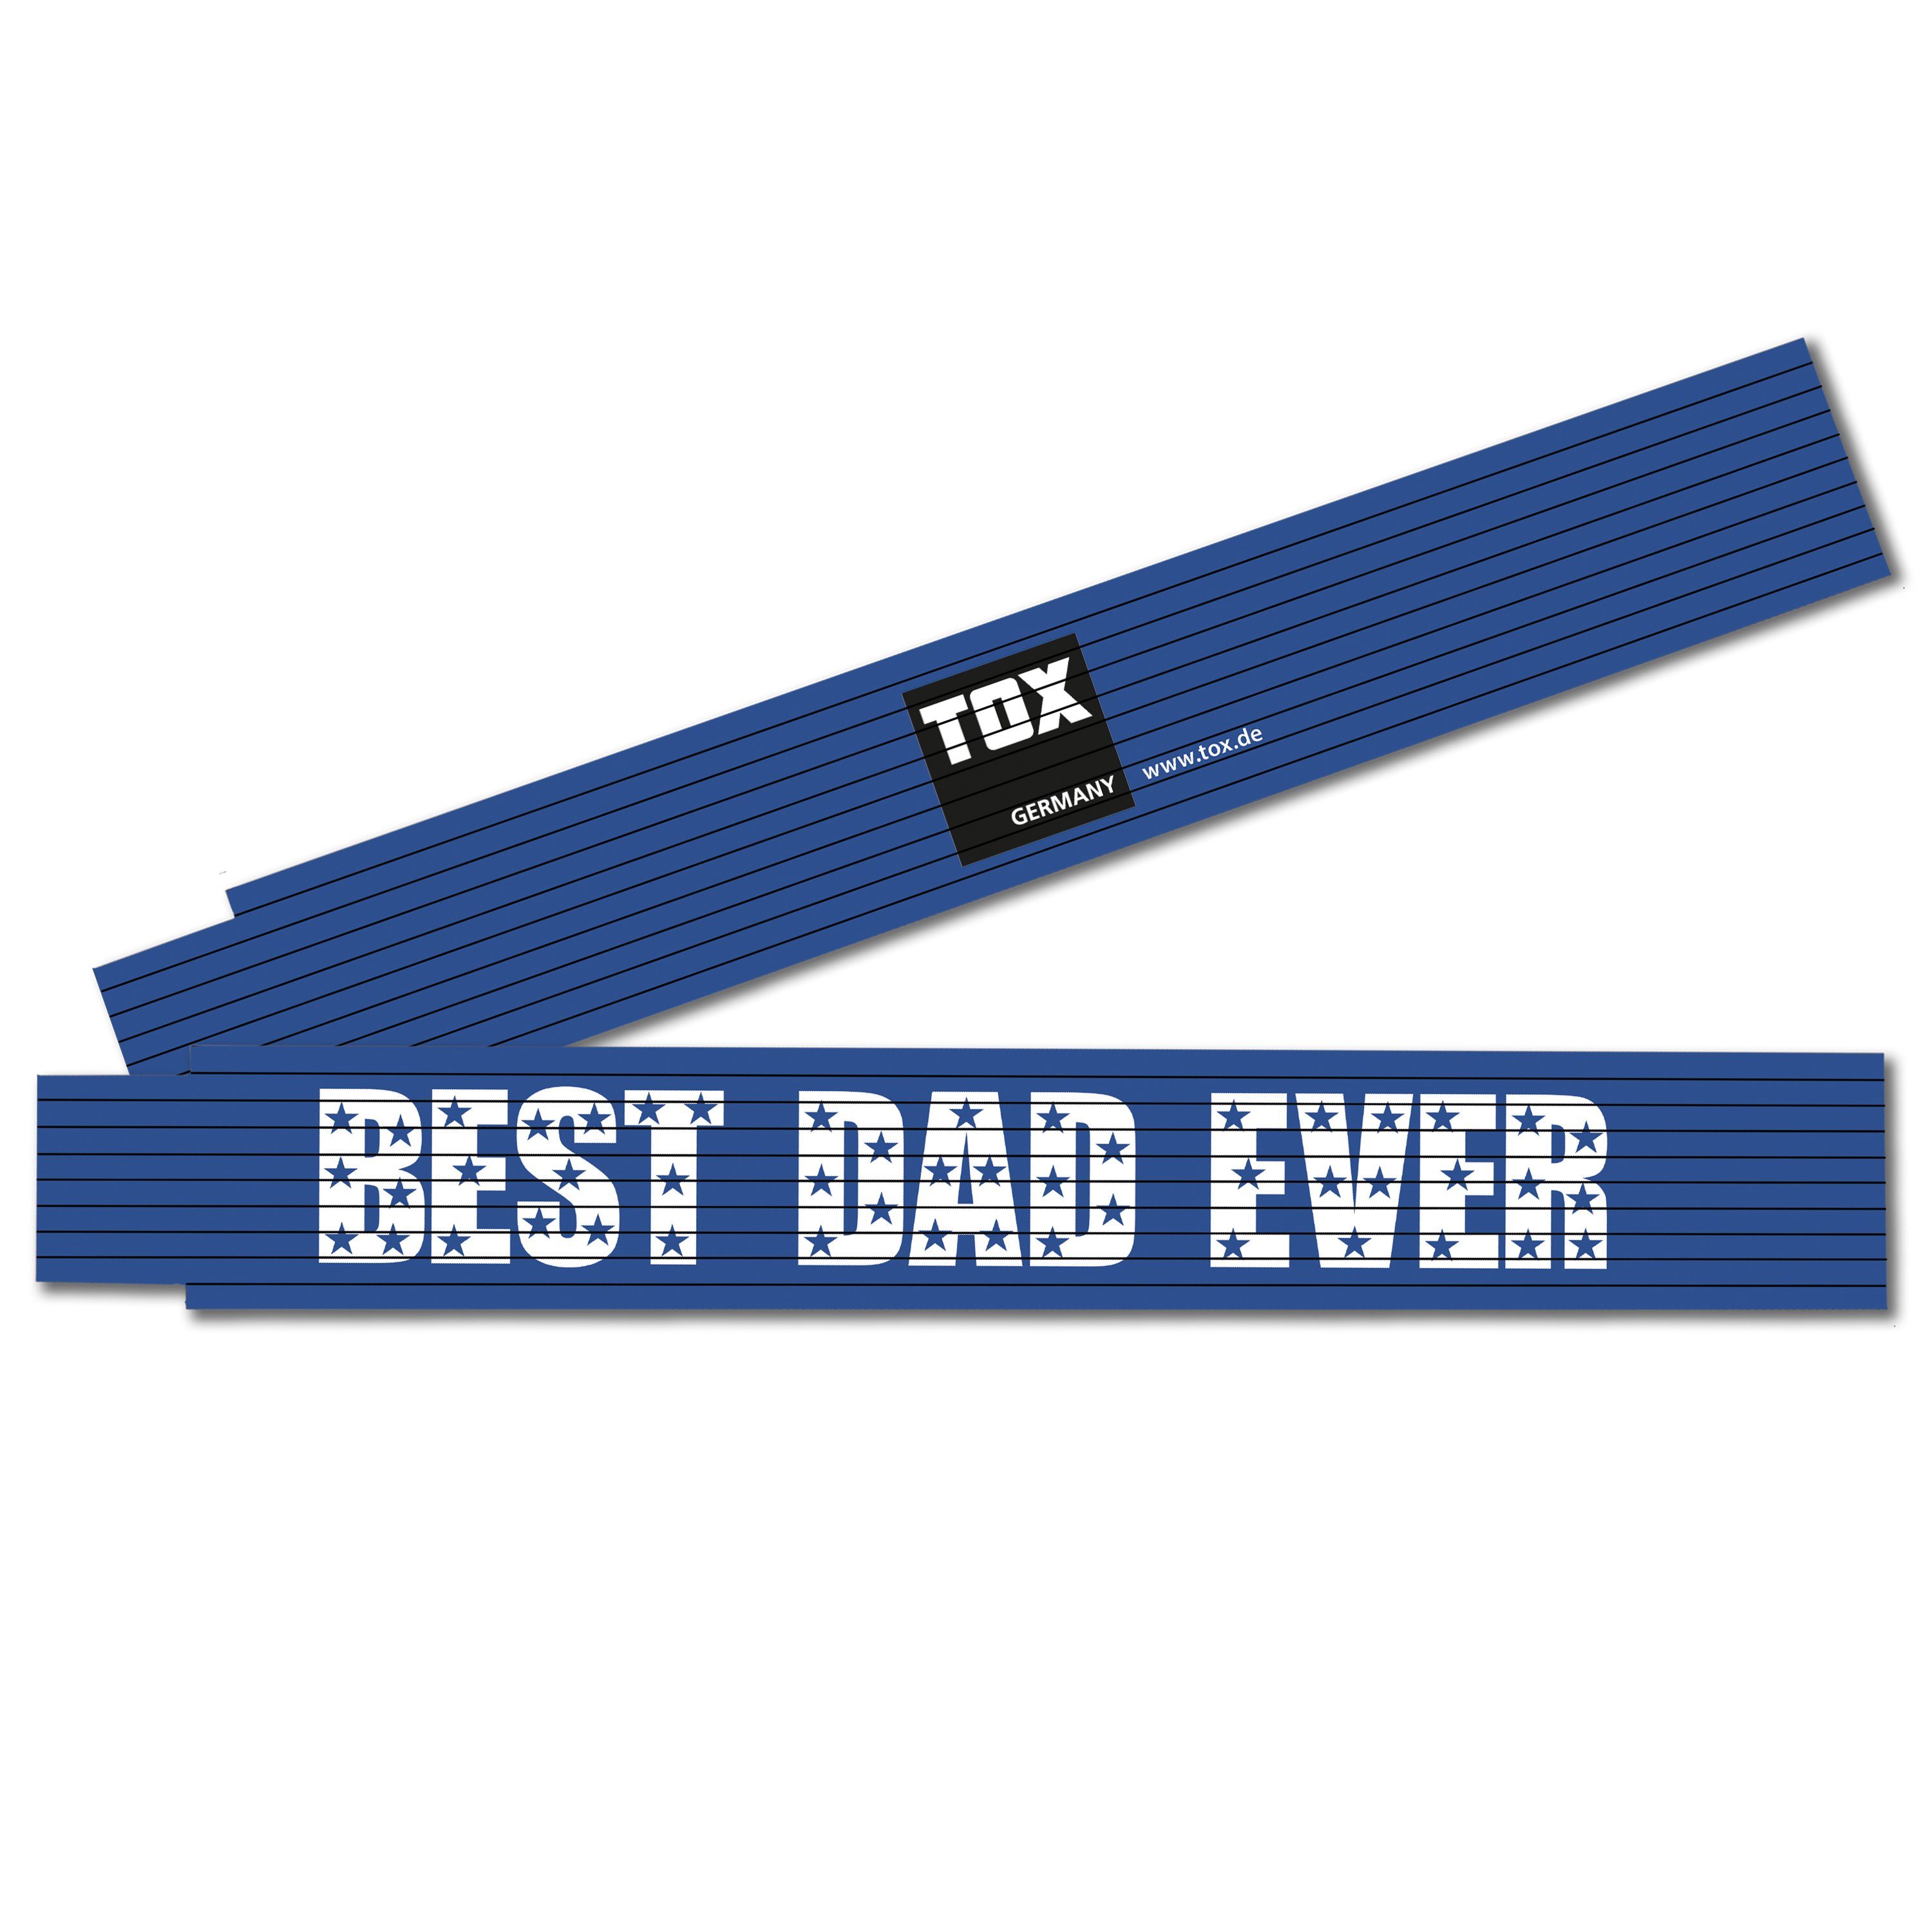 Zollstock mit DAD EVER" Sprüchen TOX-DÜBEL-TECHNIK farbenfroh in (blau) verschiedenen Beschriftung, Meterstab verschiedenen "BEST und meter, mit cooler Farben 2